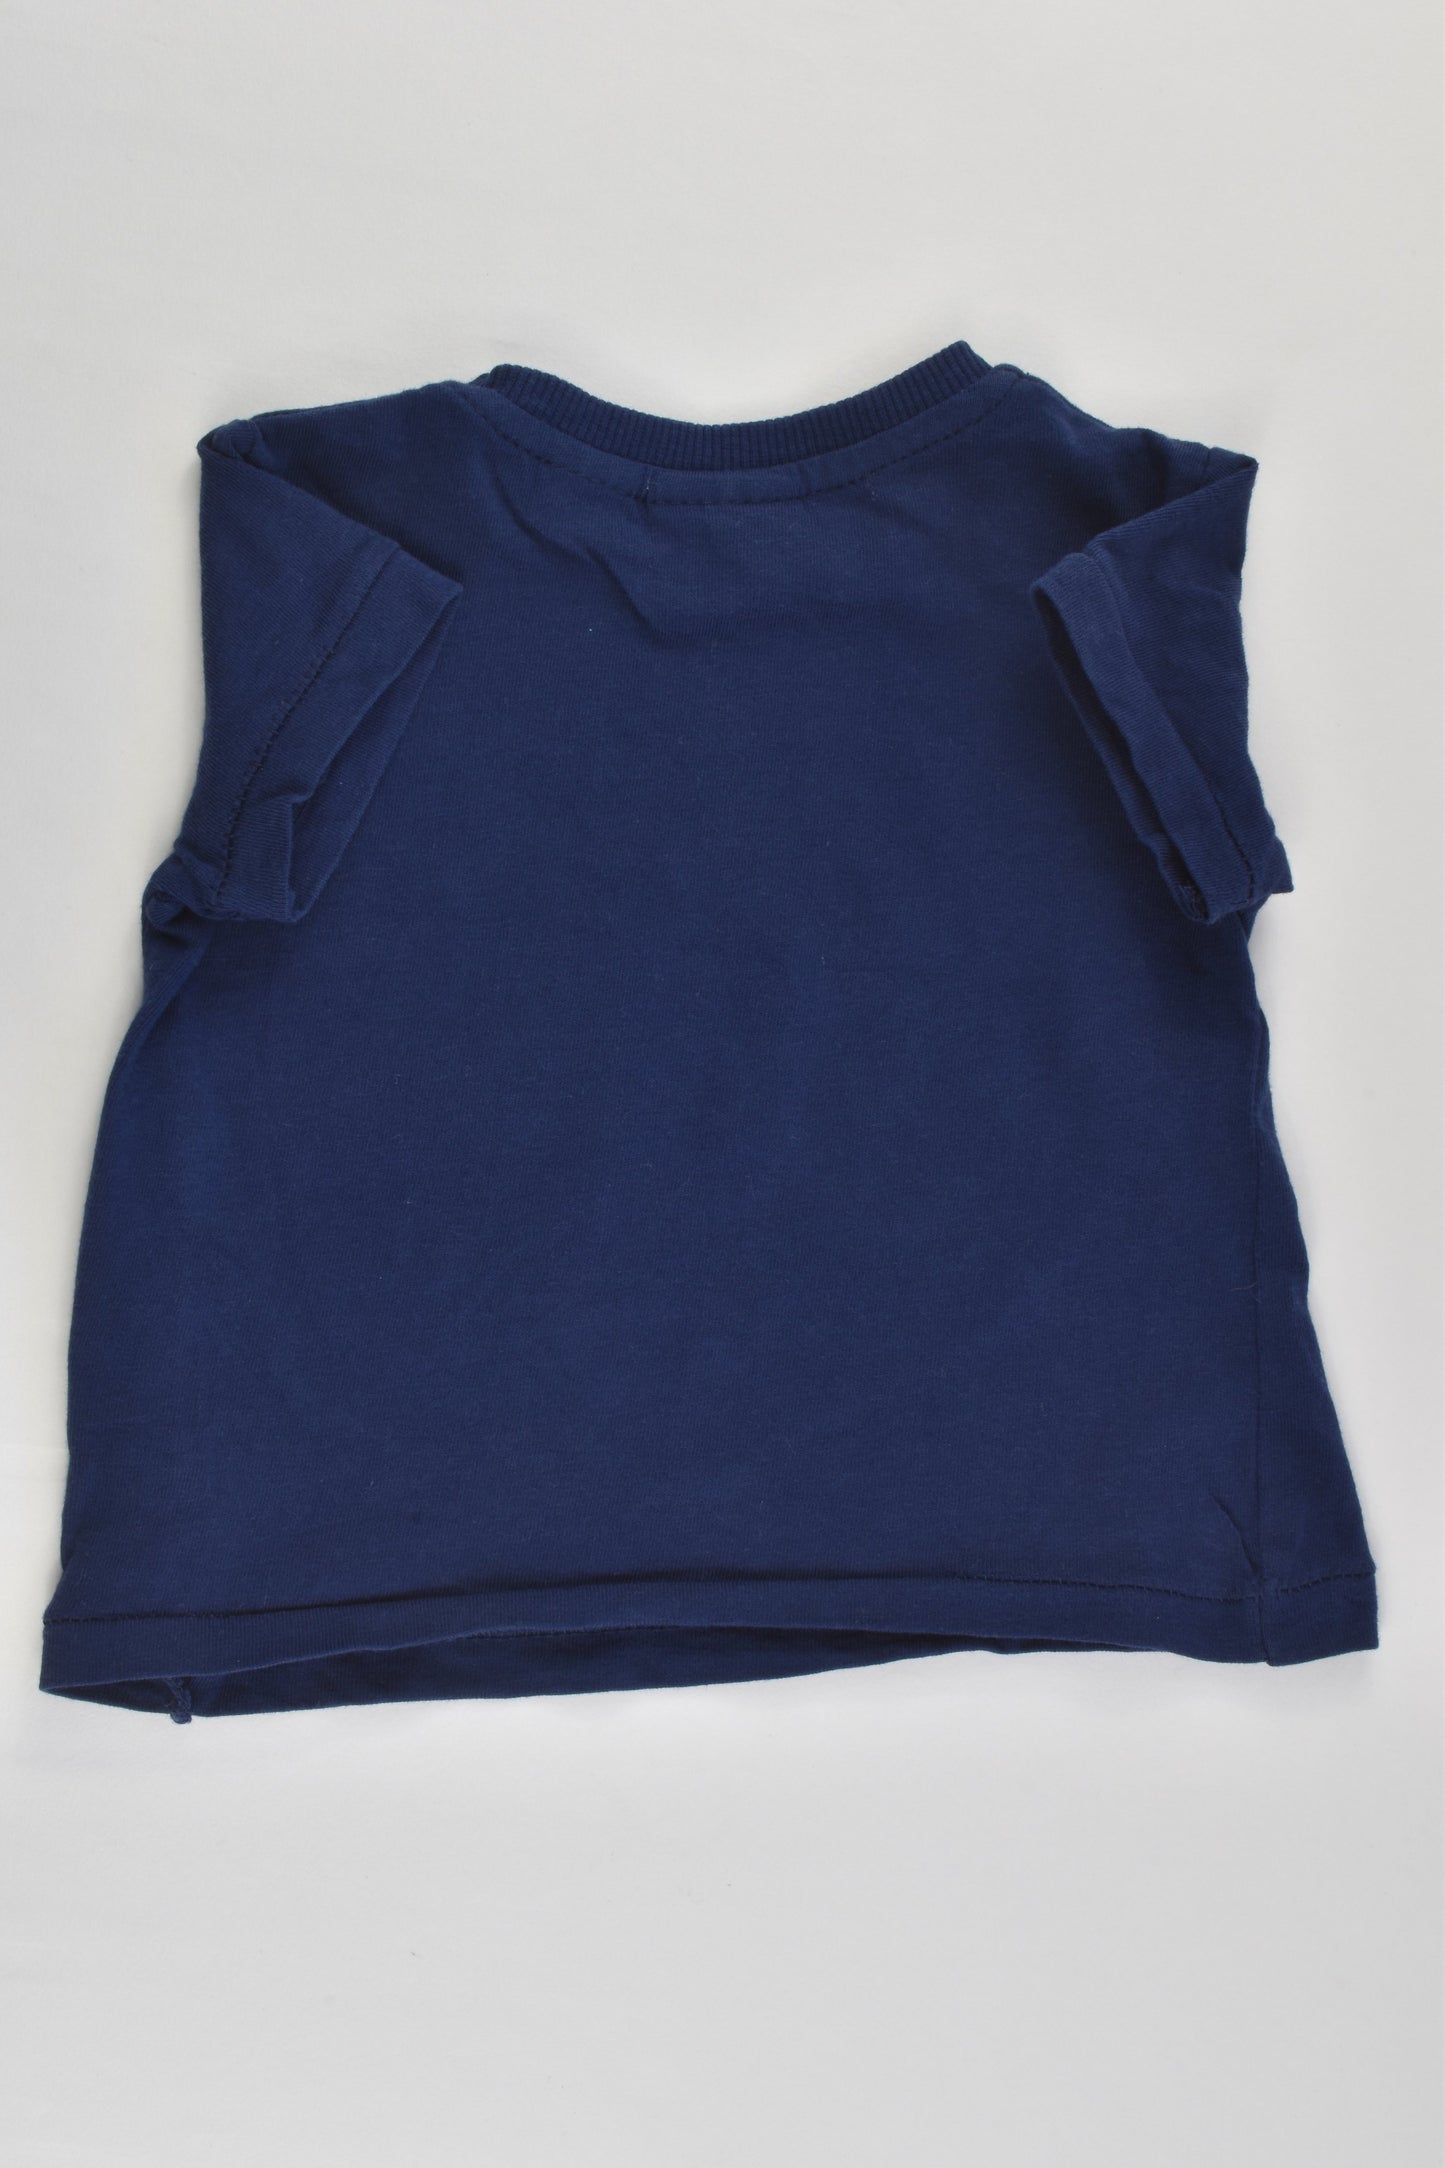 Zara Size 00 (3/6 months, 68 cm) 'Wild Thing' T-shirt